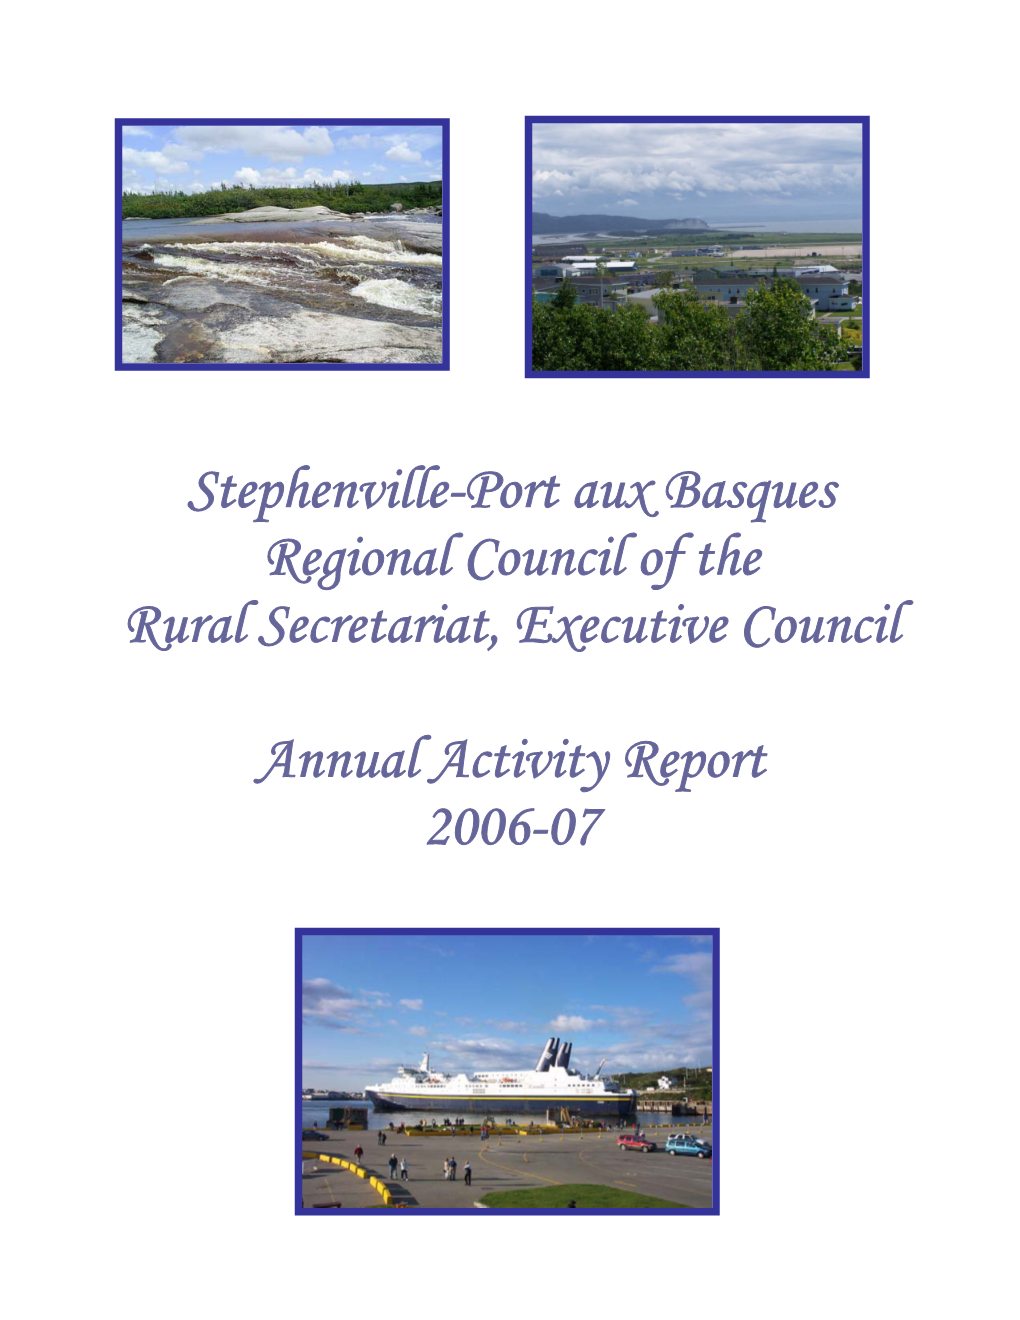 Stephenville-Port Aux Basques Regional Council of the Rural Secretariat, Executive Council